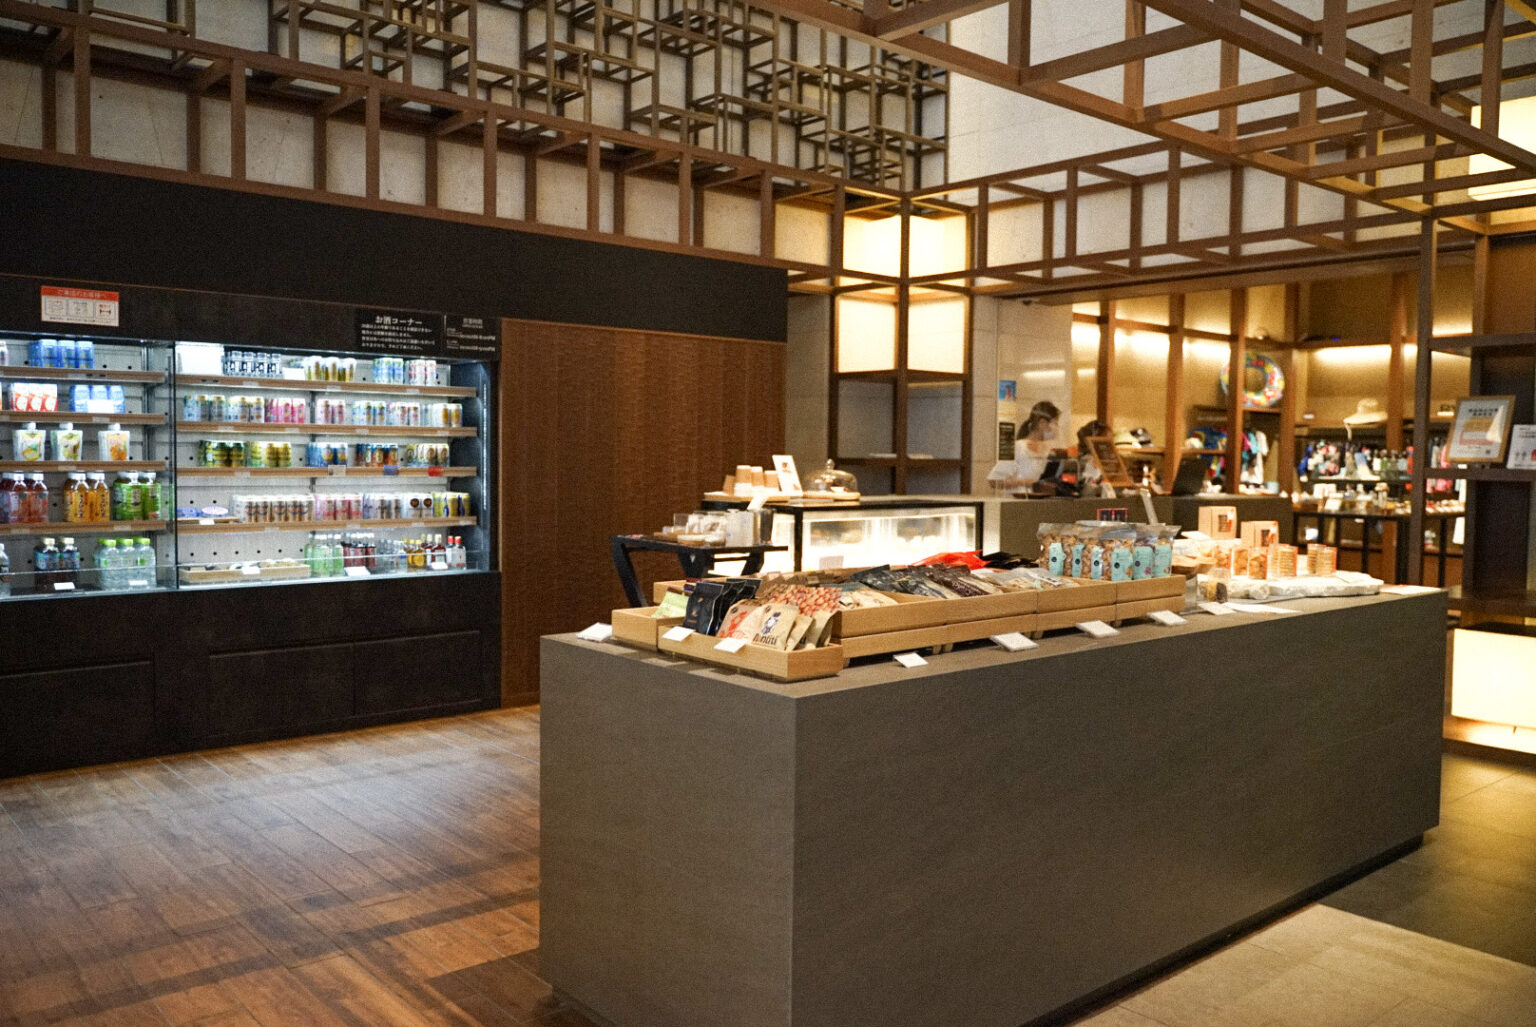 「マーケット」では、スイーツや
飲み物、琉球グラスや沖縄工芸品なども販売。